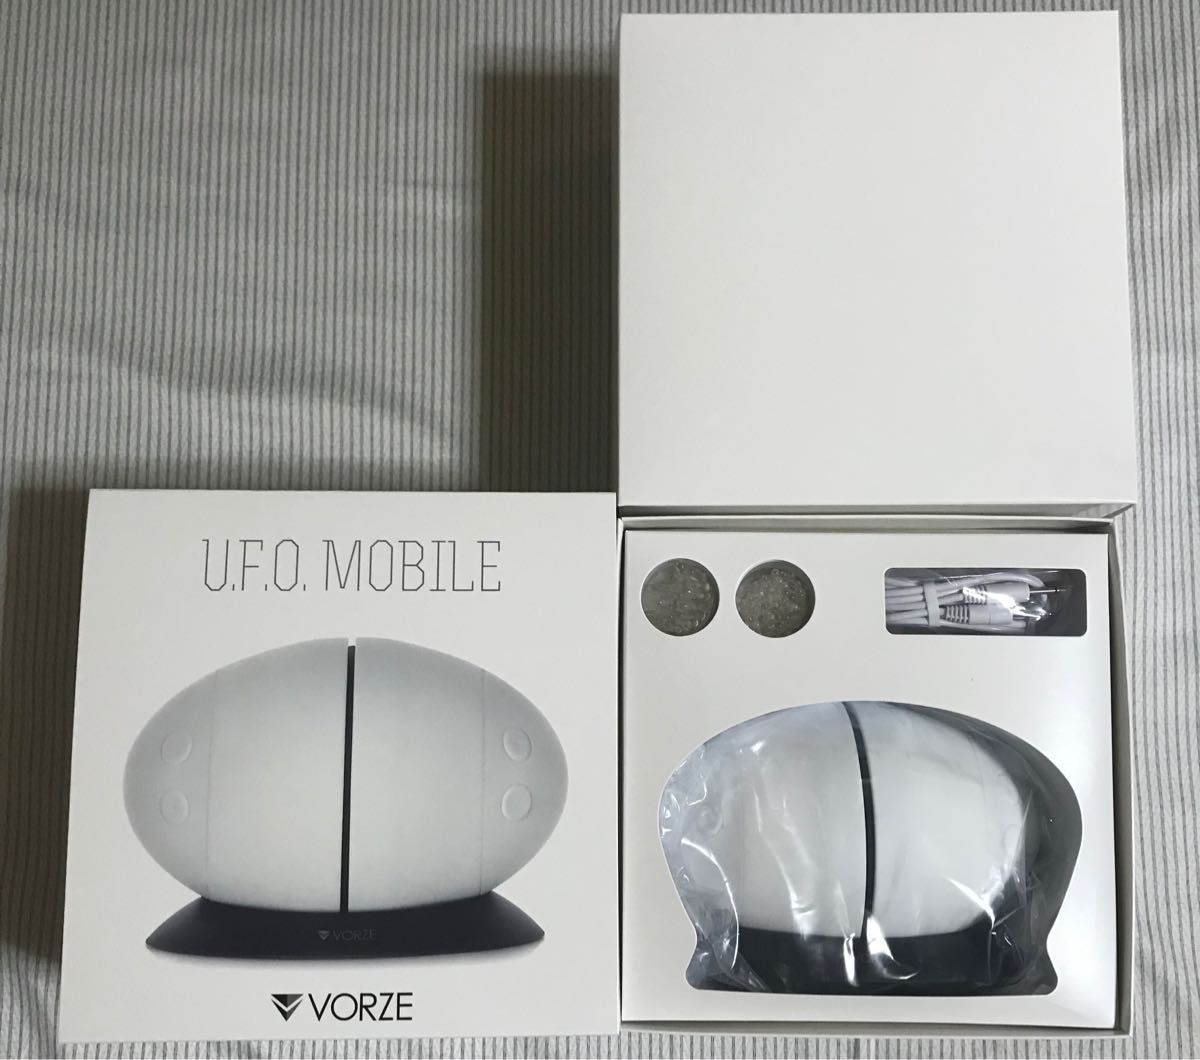 【準未使用品】VORZE U.F.O. mobile UFO mobile